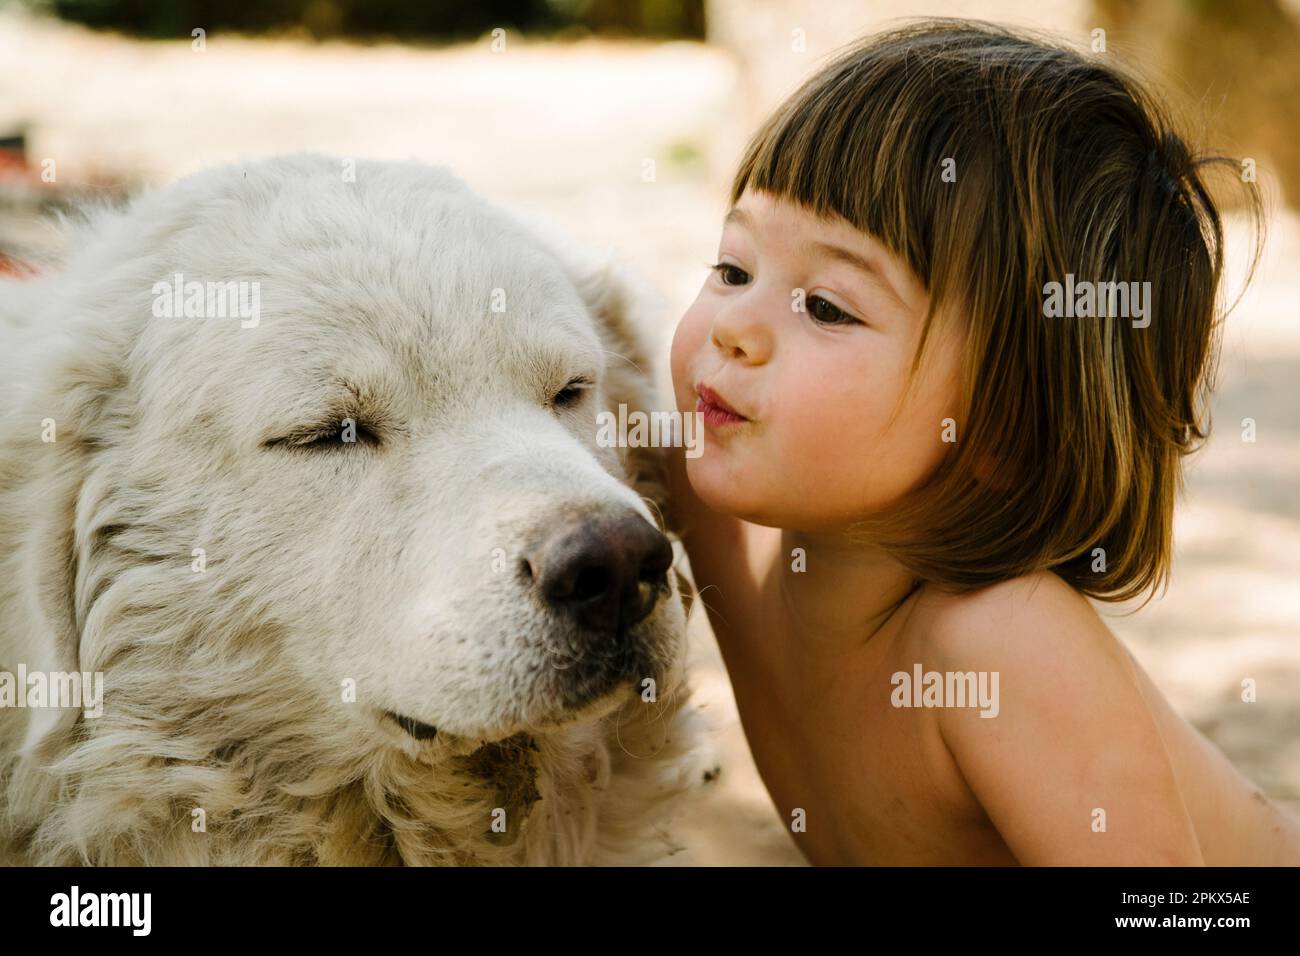 Das süße Kleinkind küsst liebevoll den alten weißen Hund Stockfoto